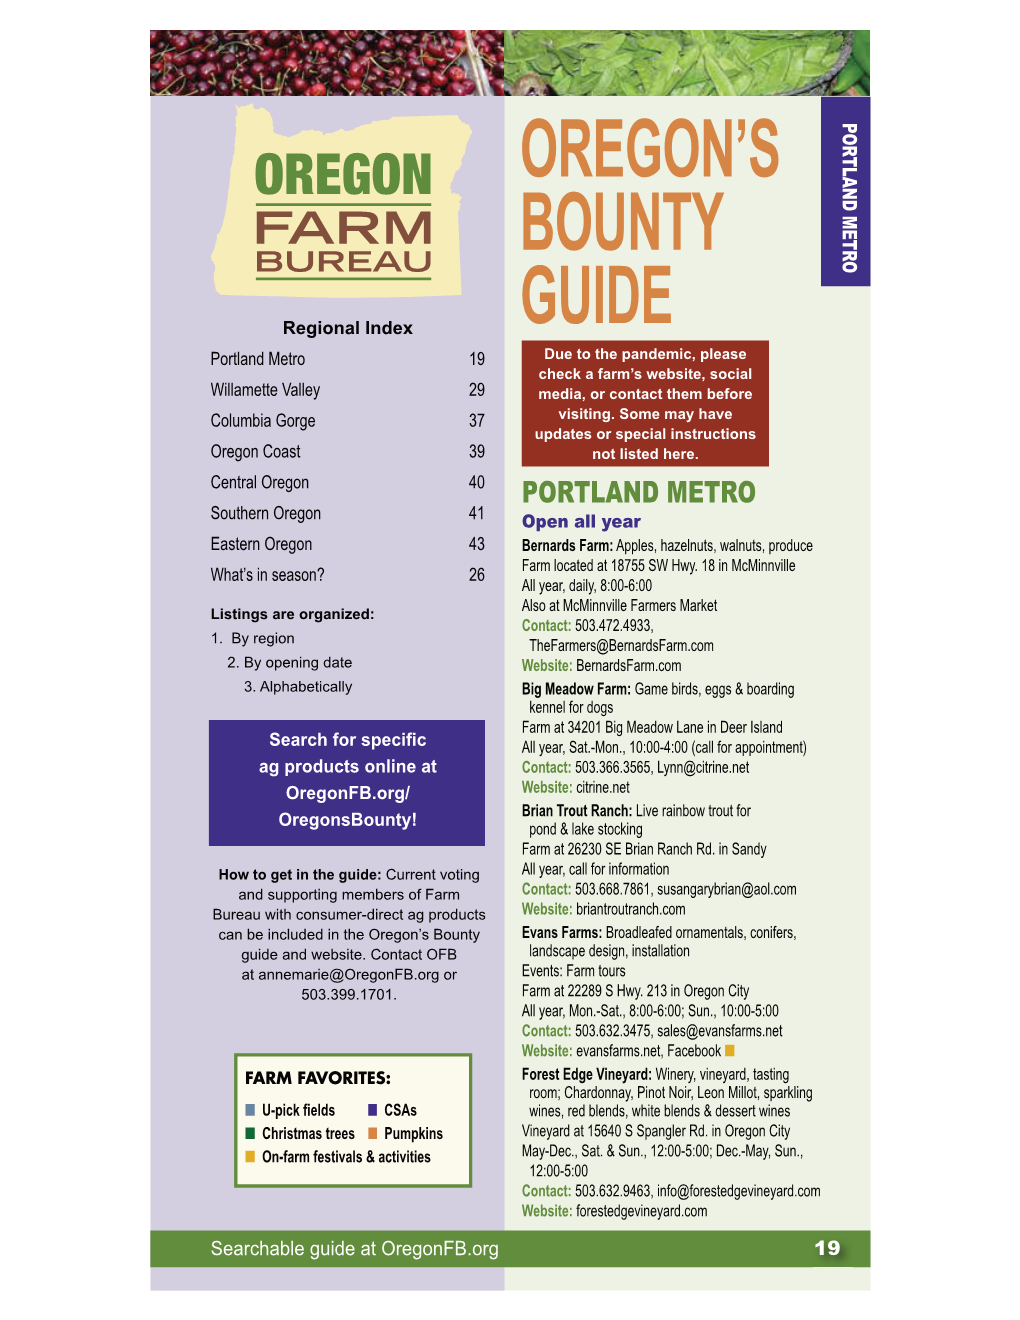 Oregon's Bounty Guide